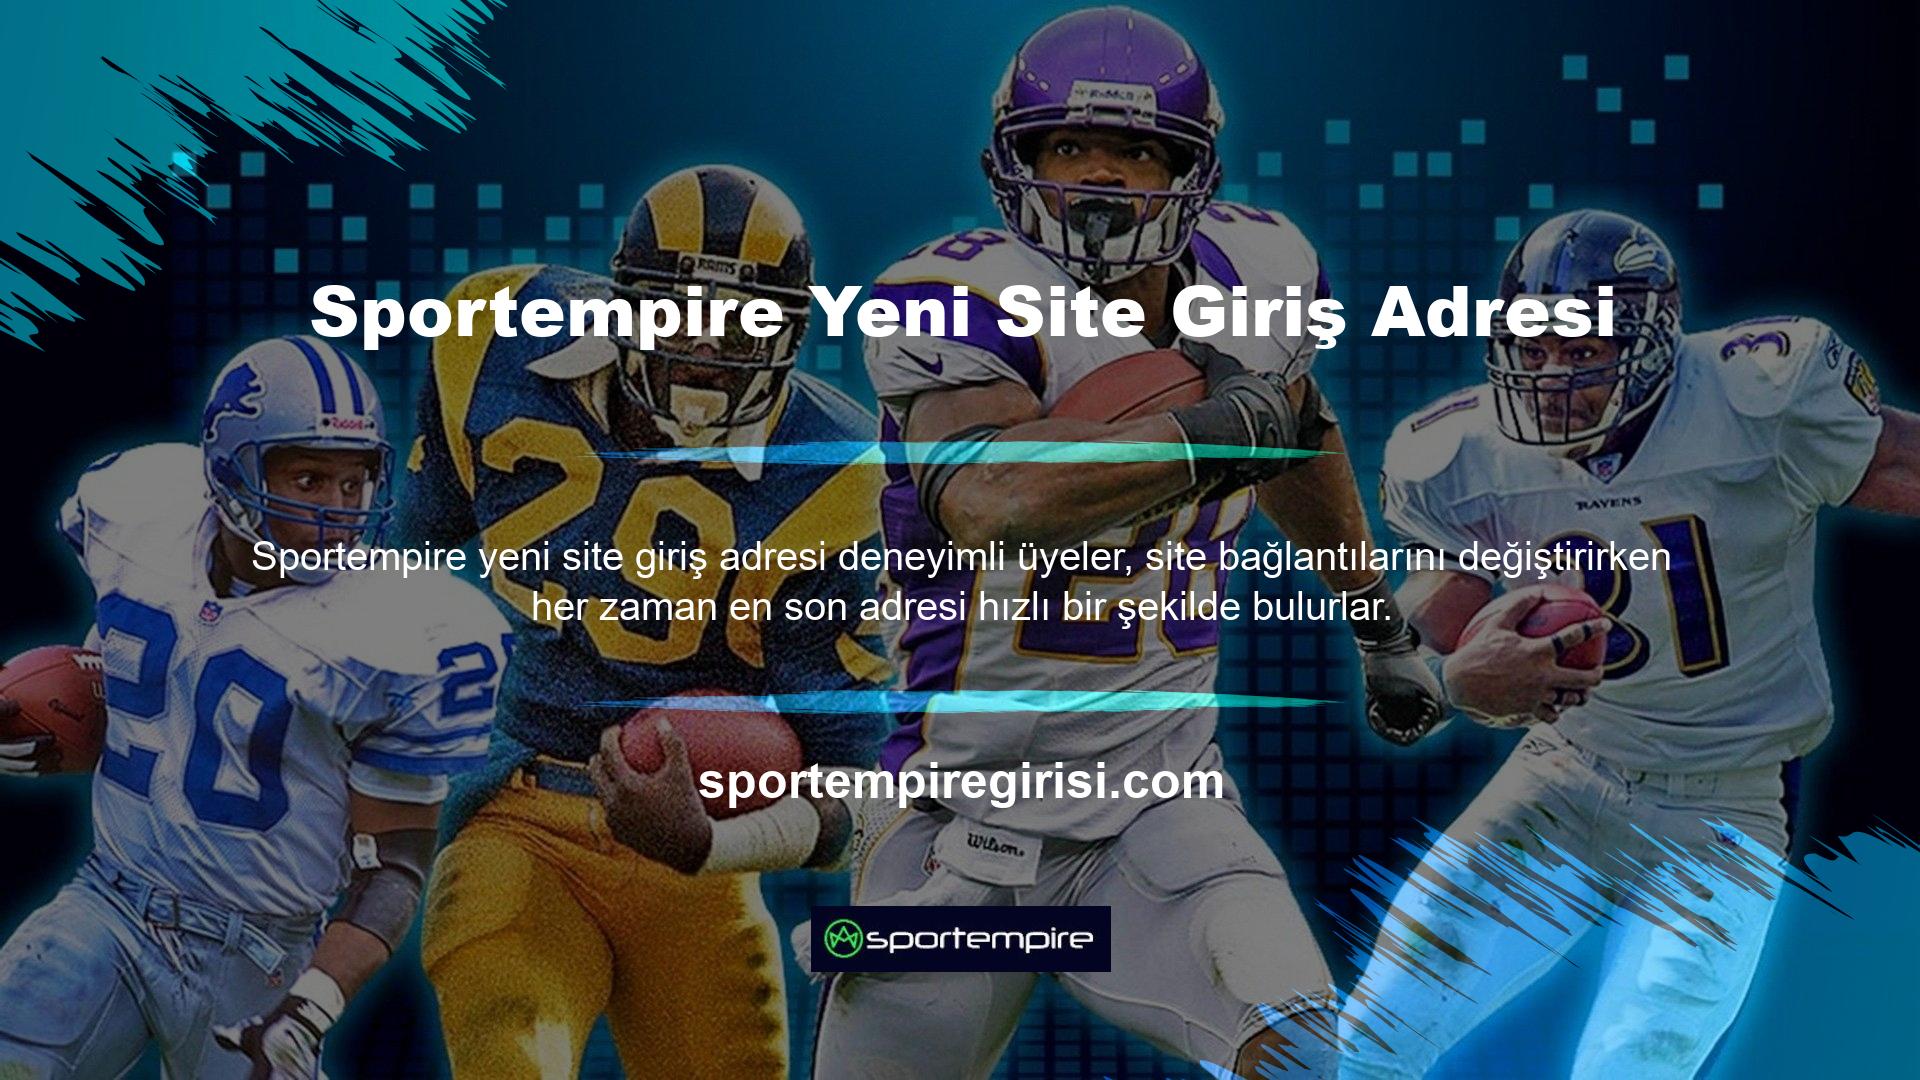 Sportempire web sitesinde yeni adresleri ziyaret etmek için birçok güzel fırsat var